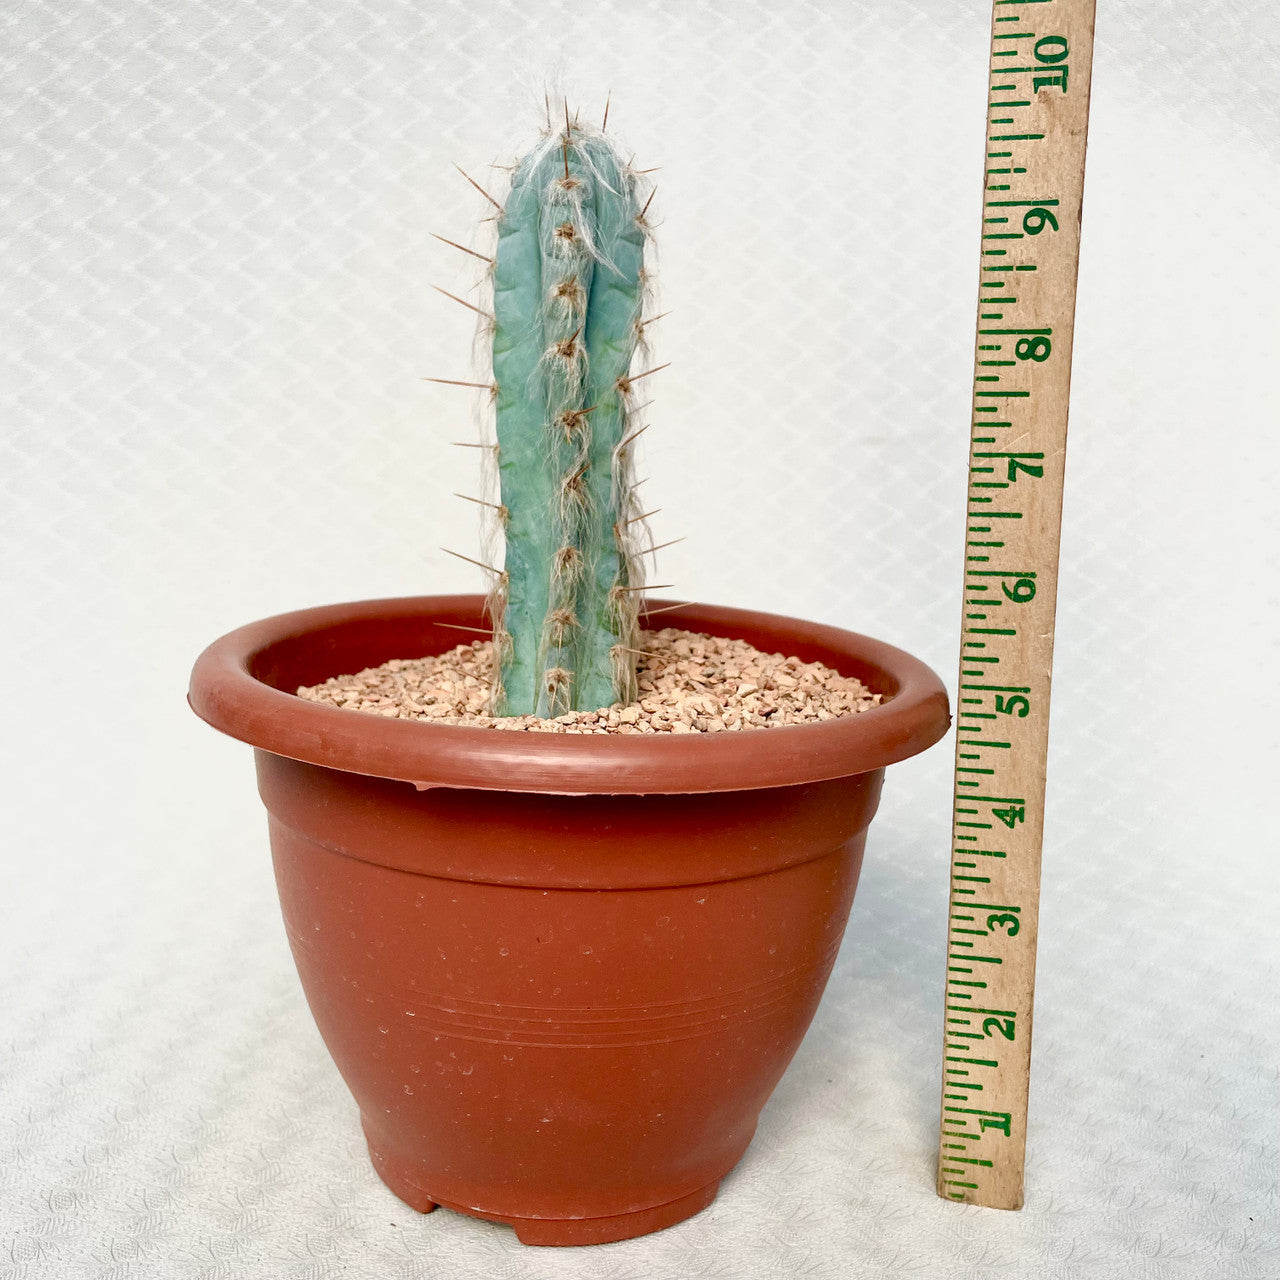 Pilosocereus Pachycladus (Blue Torch Cactus) next to a measuring stick